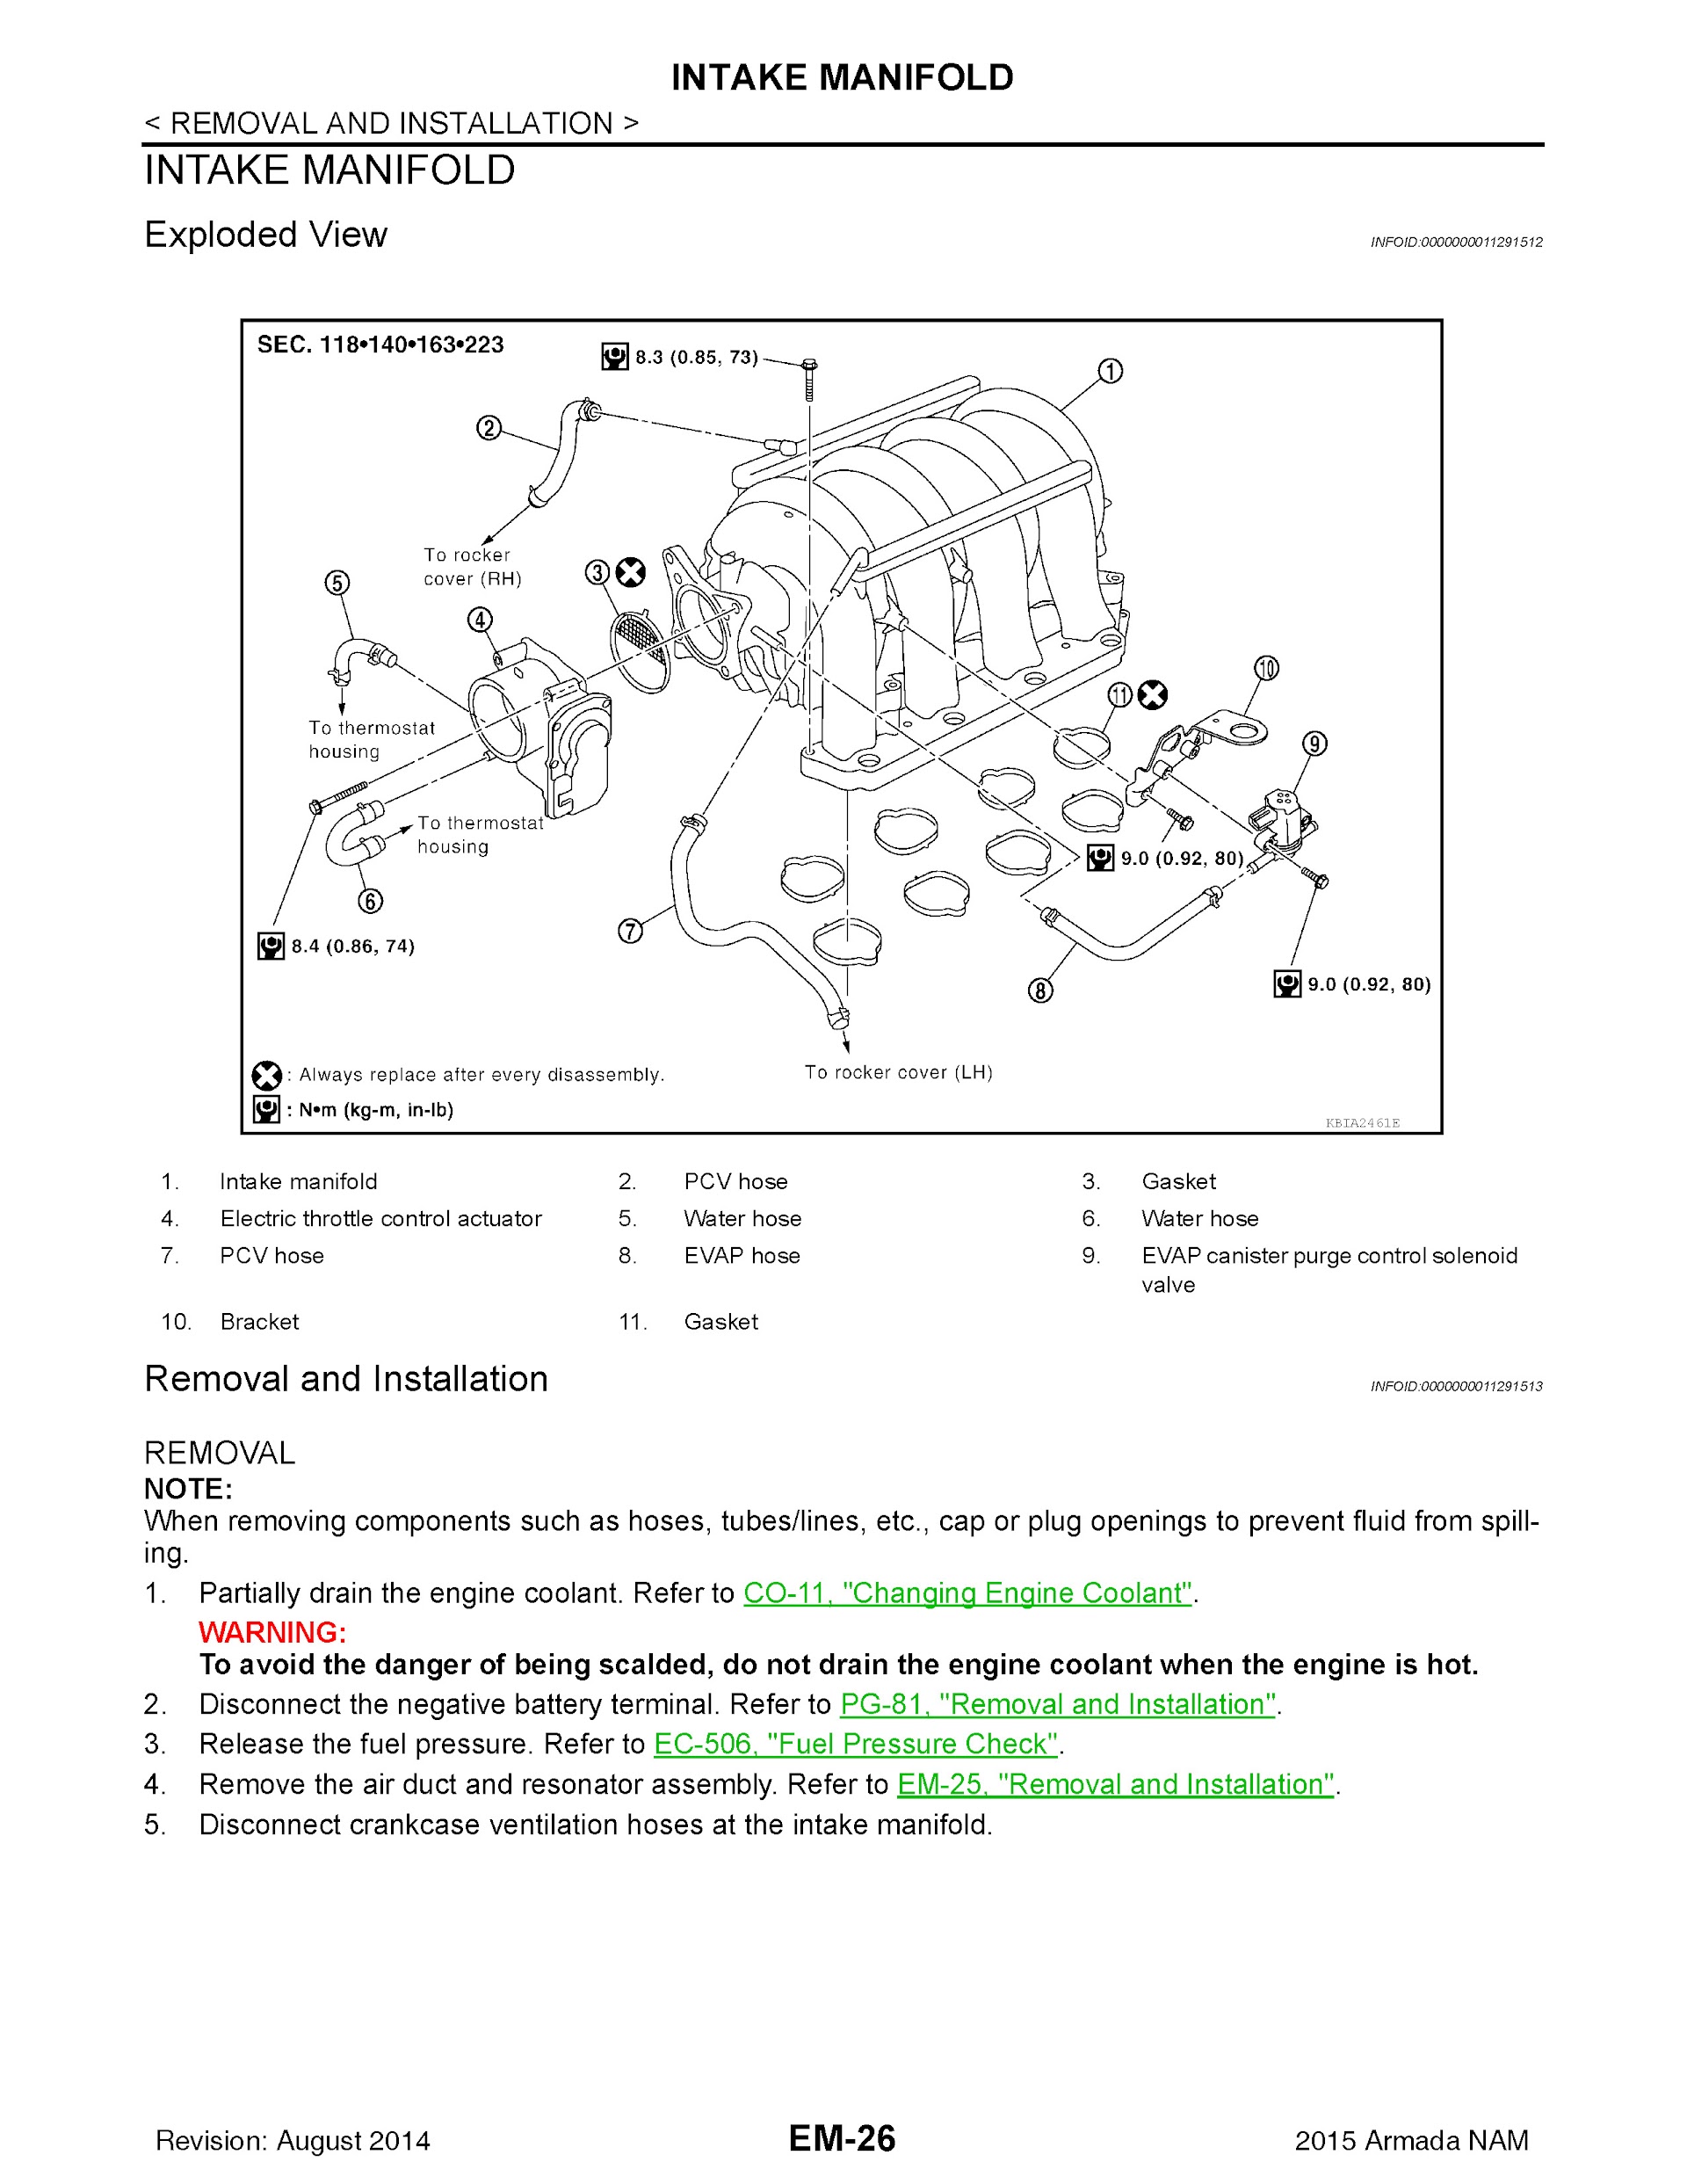 2015 Nissan Armada Repair Manual, Intake Manifold